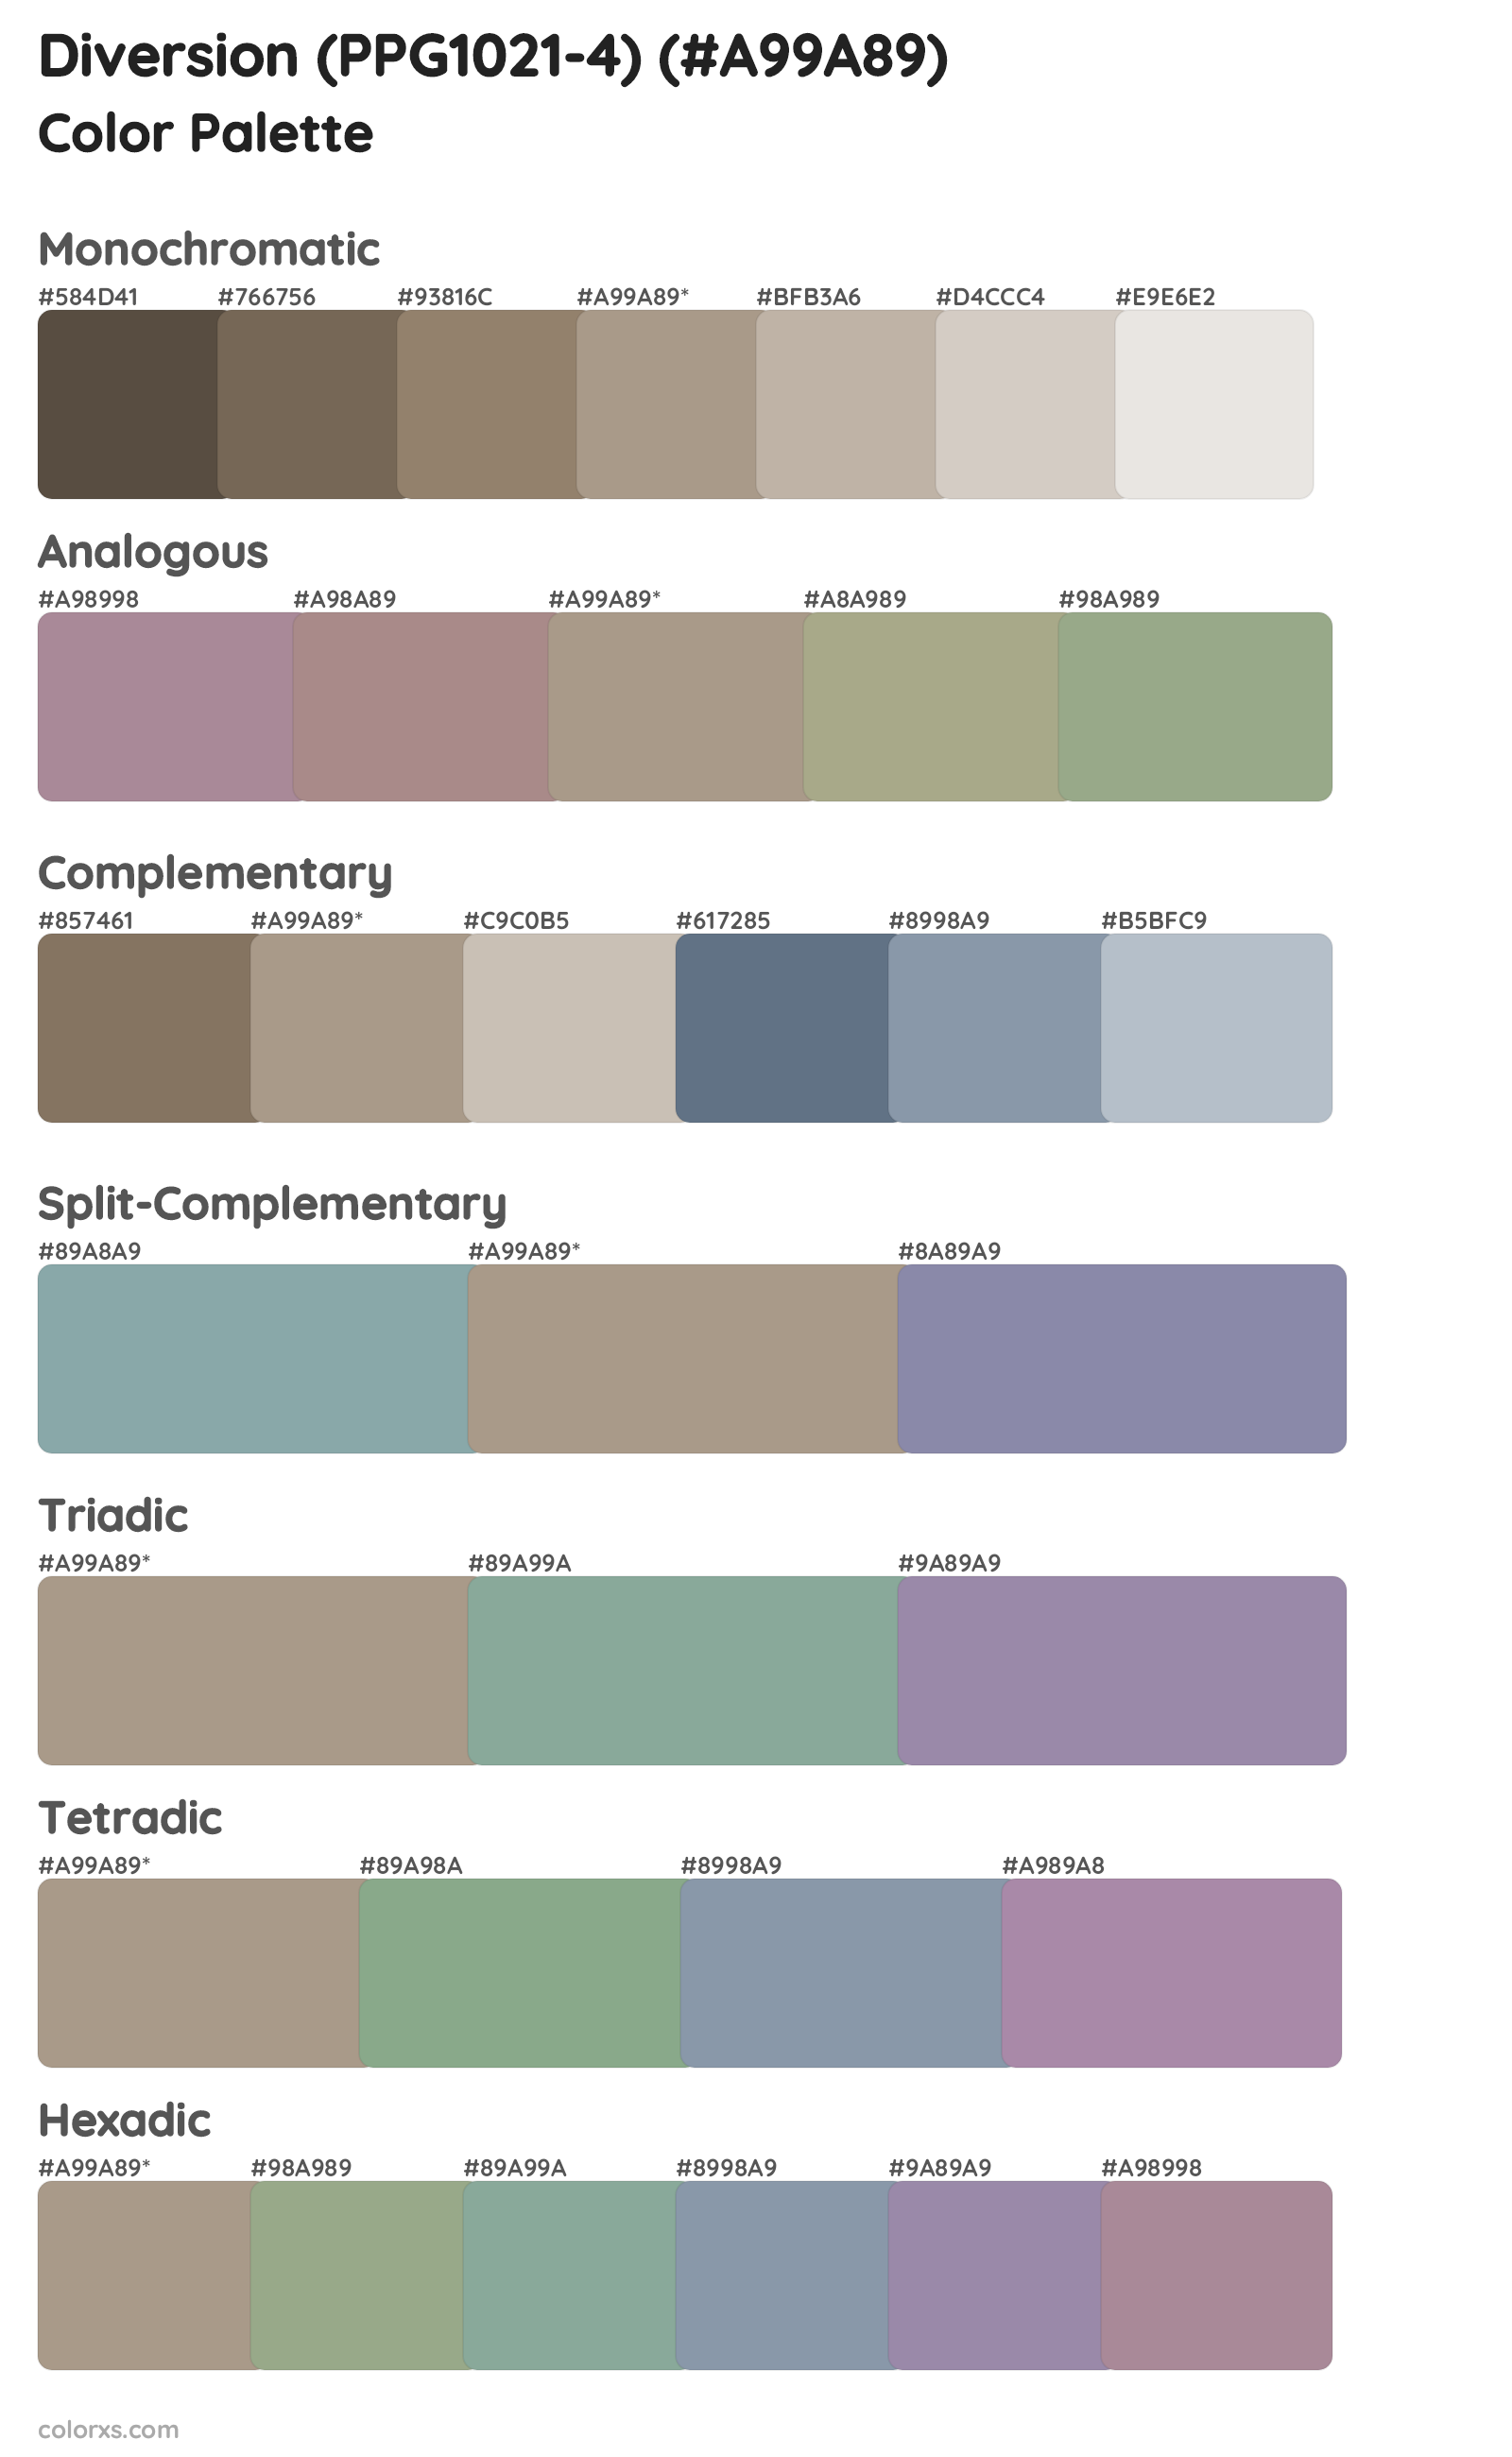 Diversion (PPG1021-4) Color Scheme Palettes